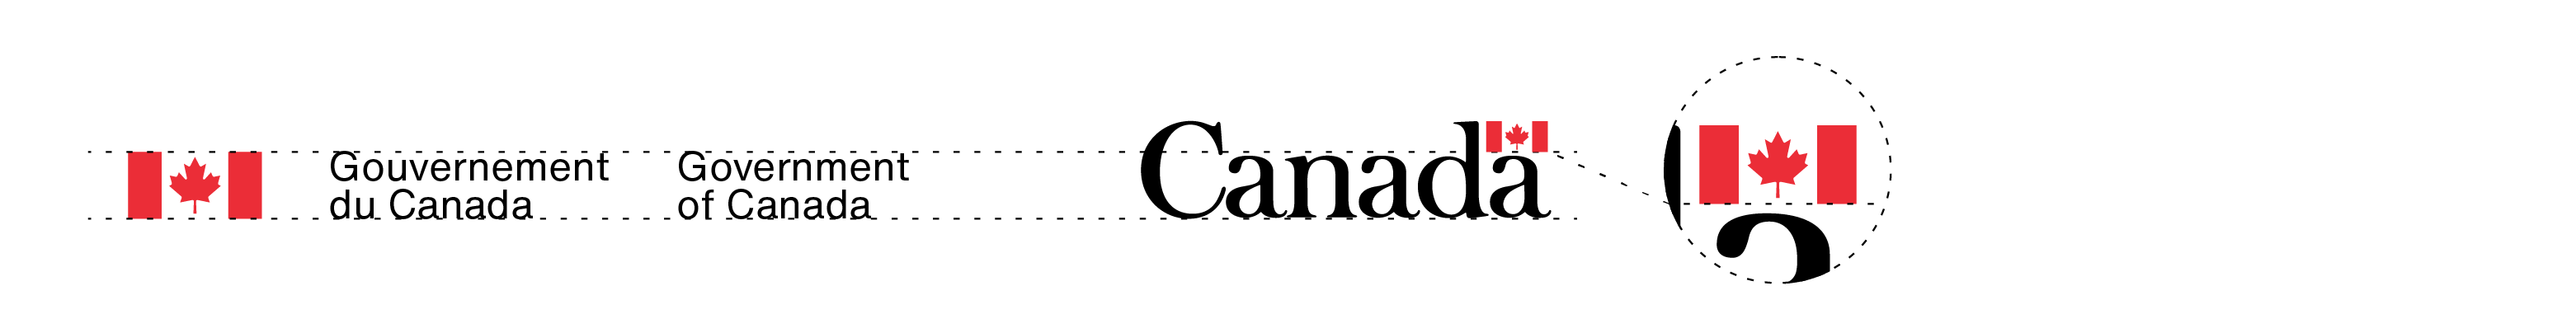 La signature avec drapeau du gouvernement du Canada et le mot-symbole « Canada » dans leurs couleurs standards. La proportion de leurs tailles est expliquée dans le texte ci-dessus.